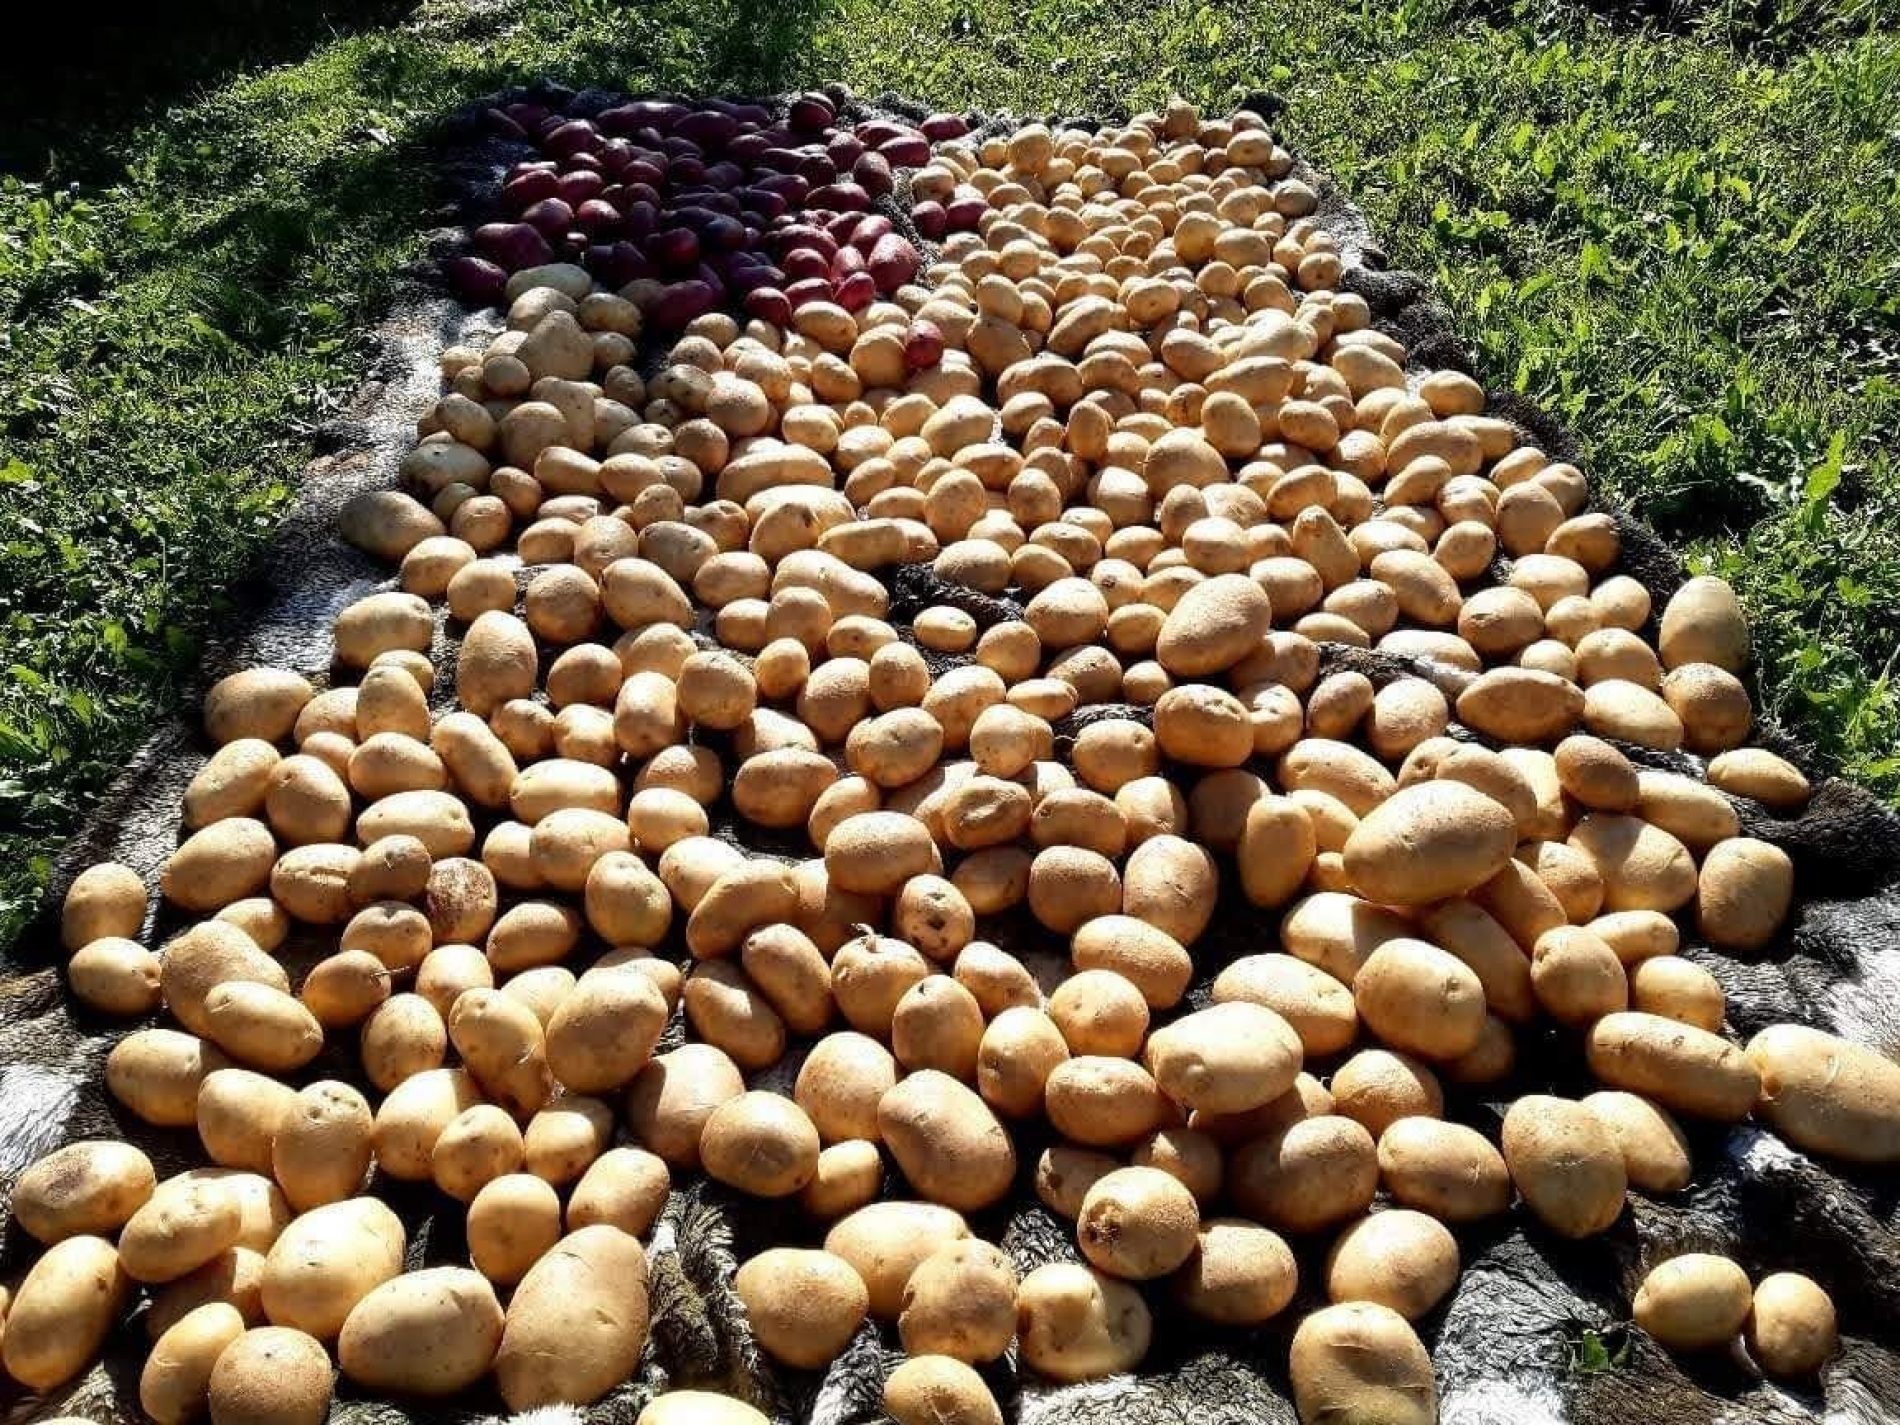 Poljoprivreda je isplativa: Kurbegovići iz G. Vakufa uzgajaju krompir, kupus i malinu. Zadovoljni i  isplaćenim poticajima